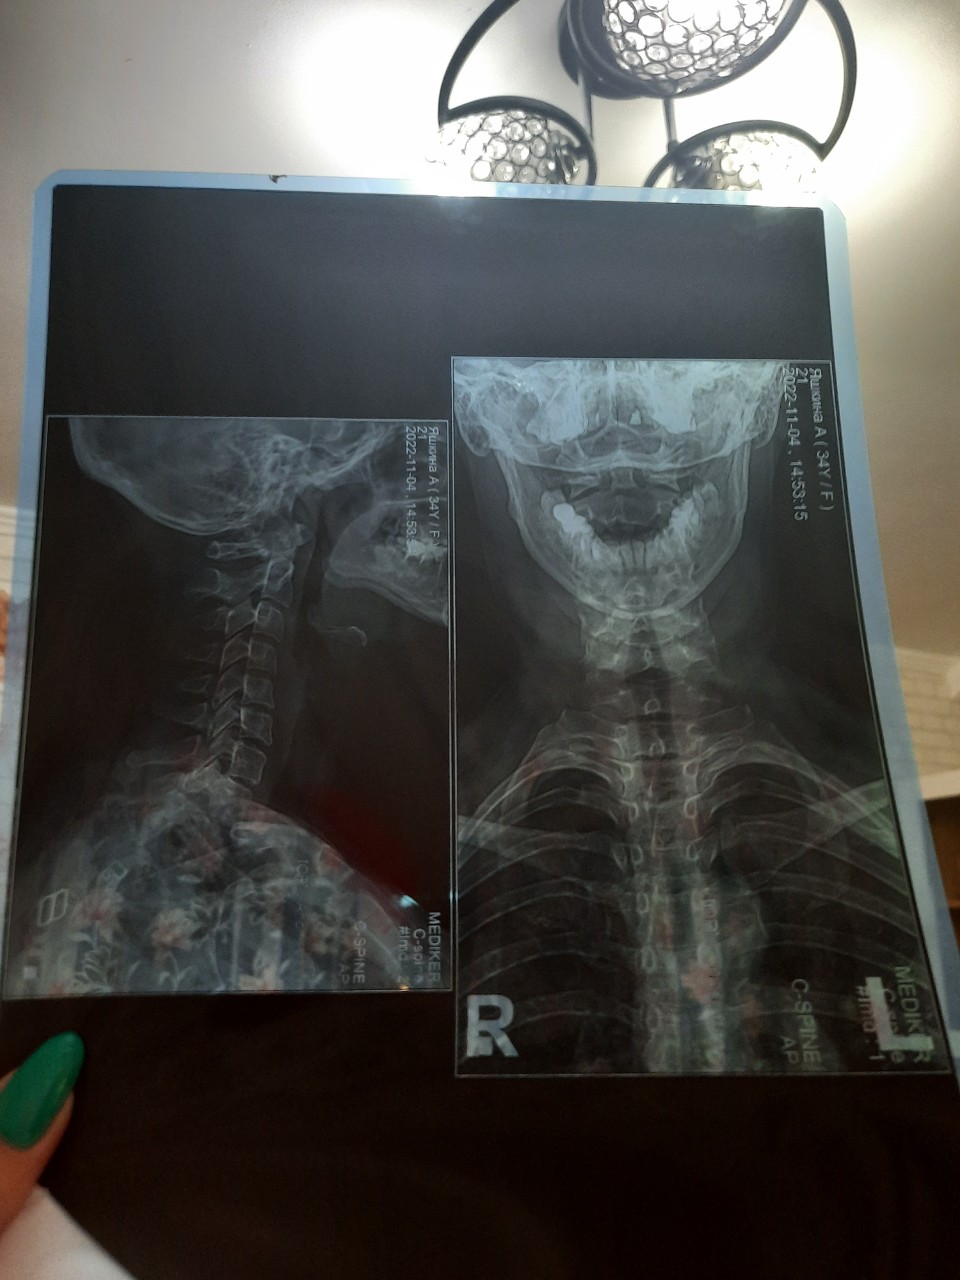 Рентген шеи фото сбоку